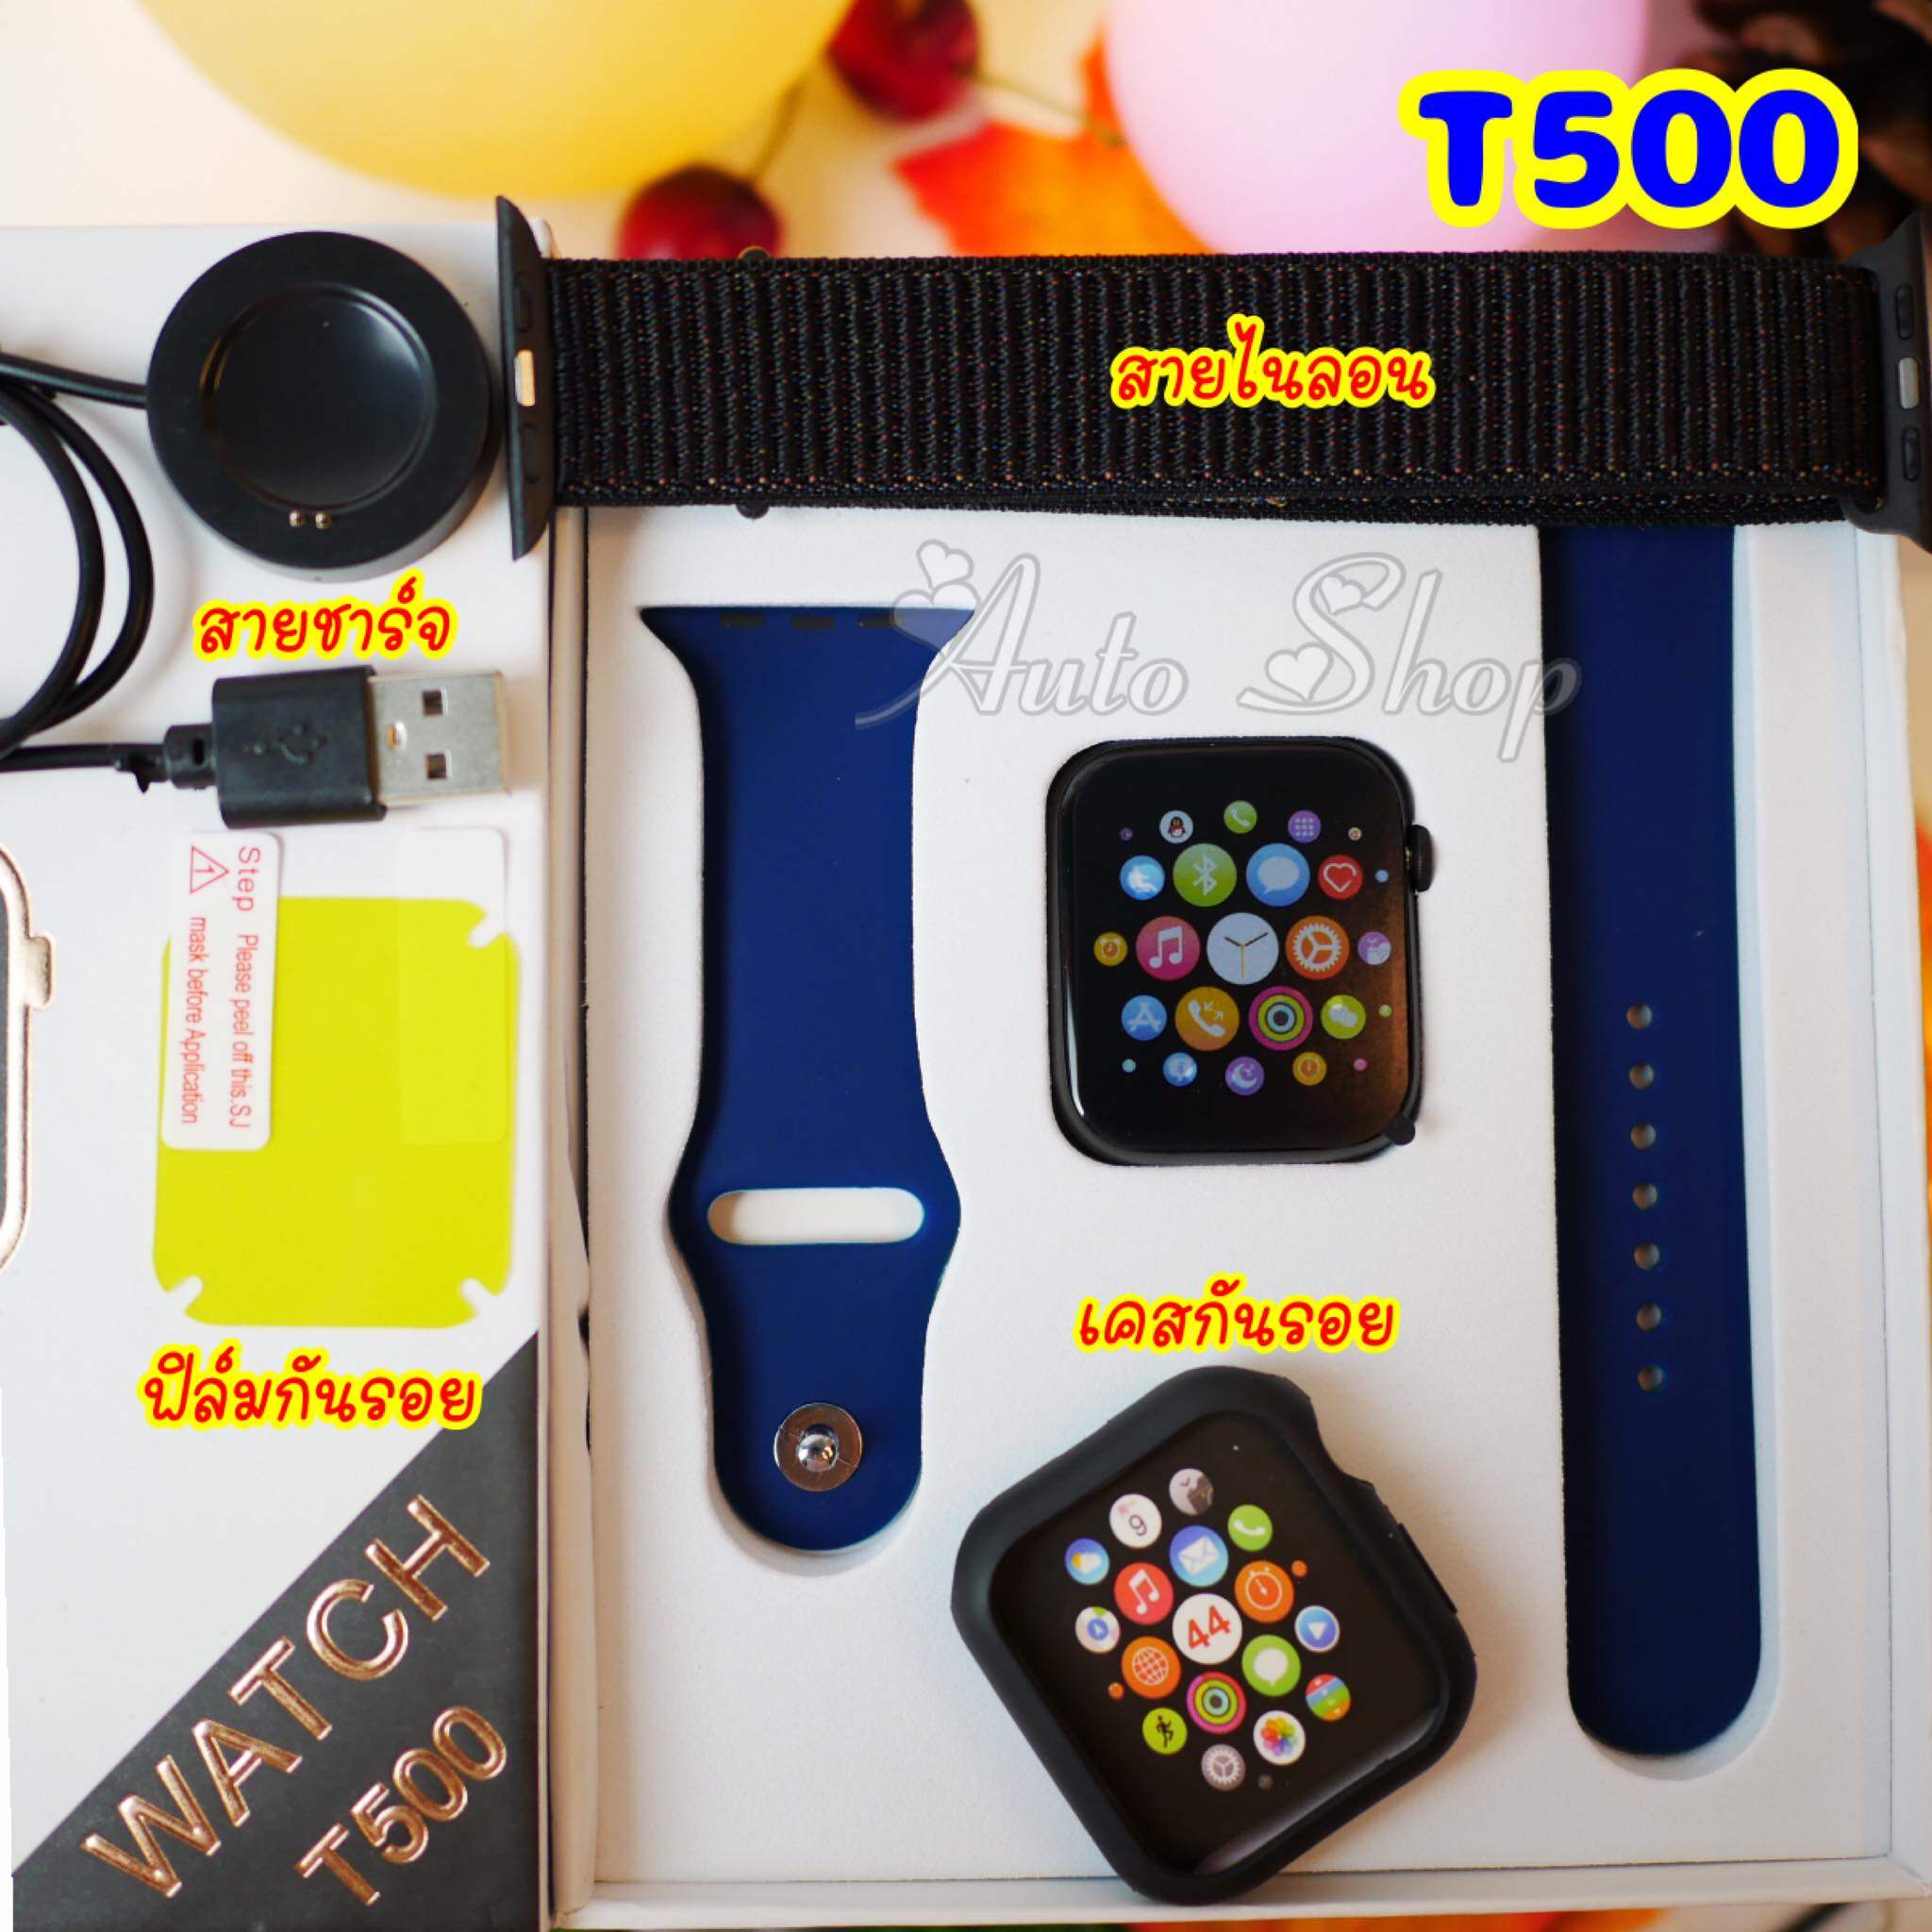 นาฬิกา สมาร์ทวอทซ์ Smart watch T500 โทรออก-รับสายได้ (ของแท้) รุ่นใหม่ล่าสุด **แถมฟิล์มกันรอย